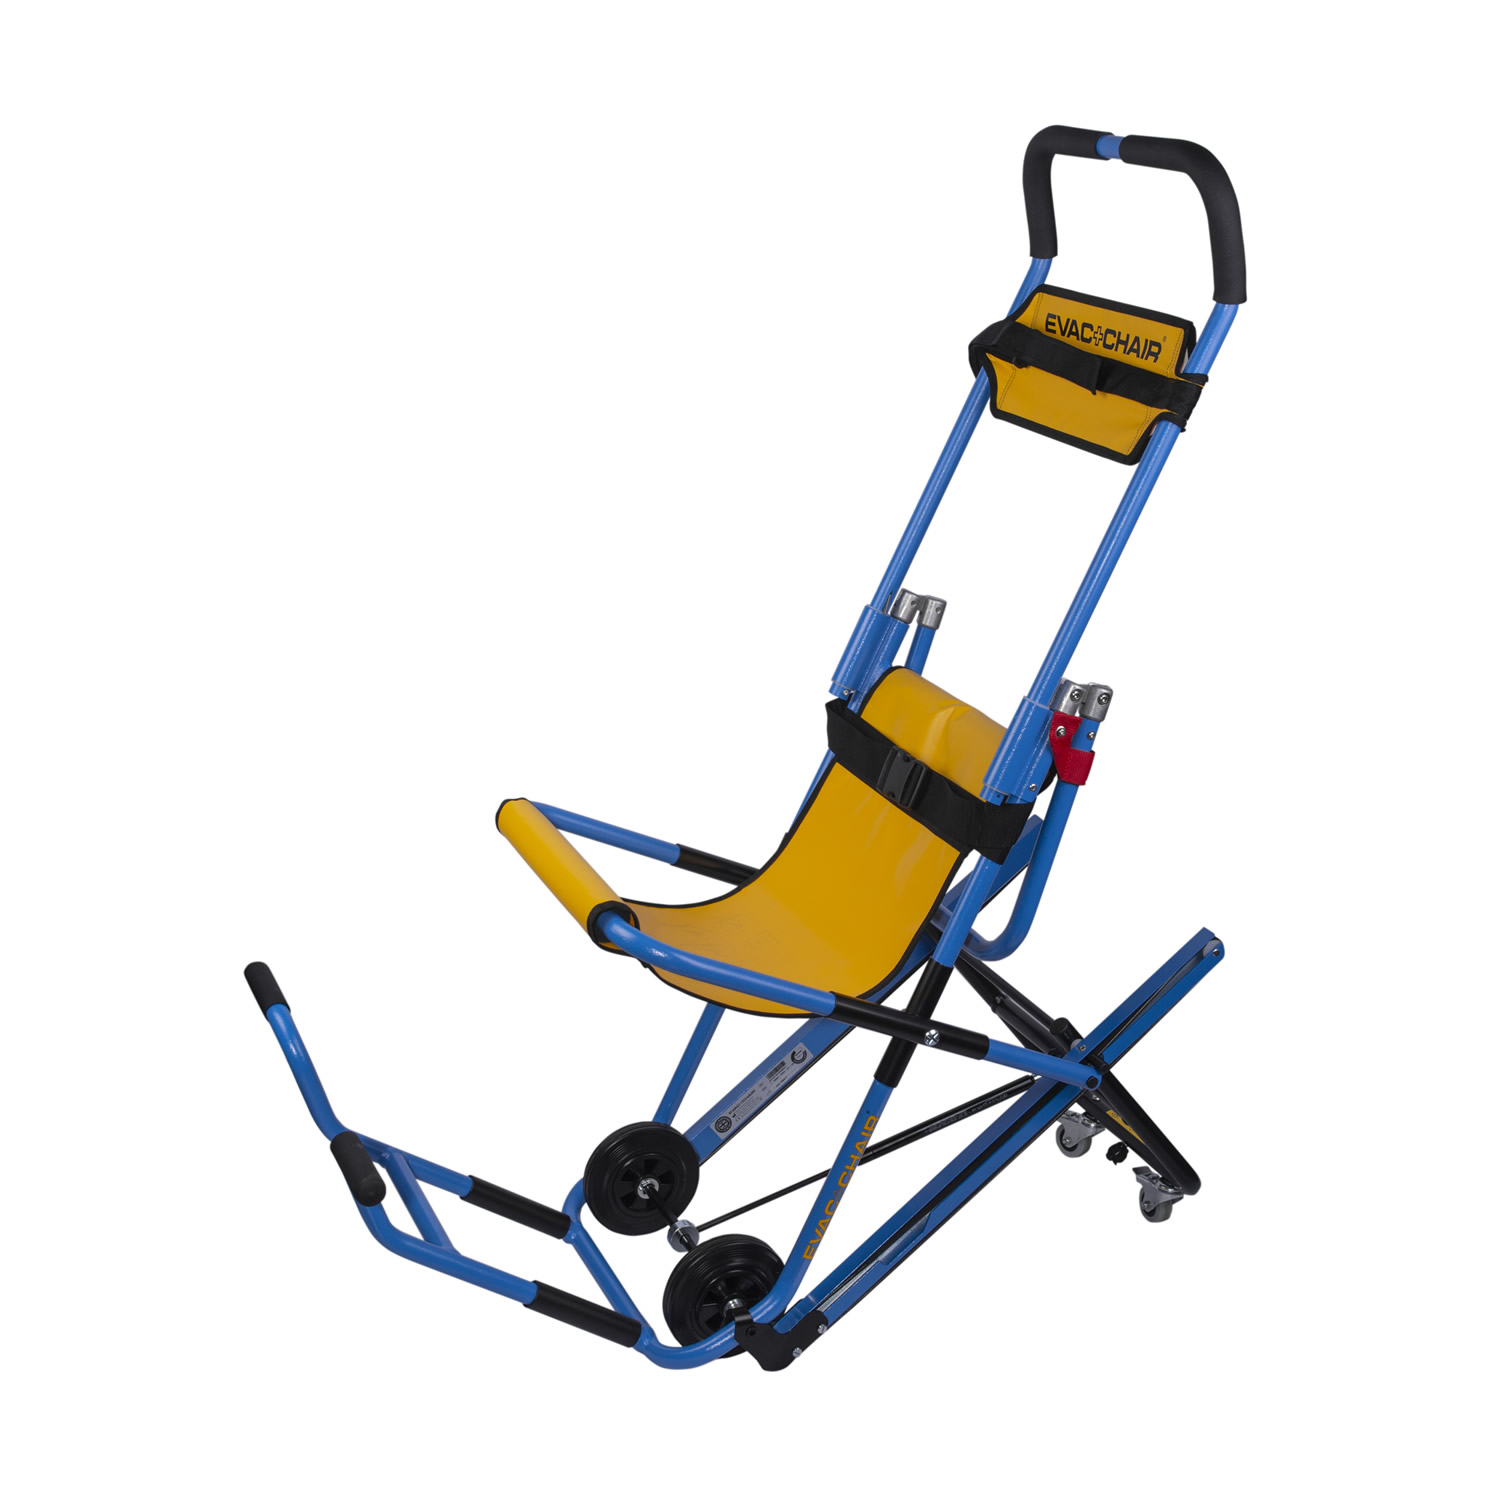 EVAC+CHAIR 600H MK5 Evacuation Chair